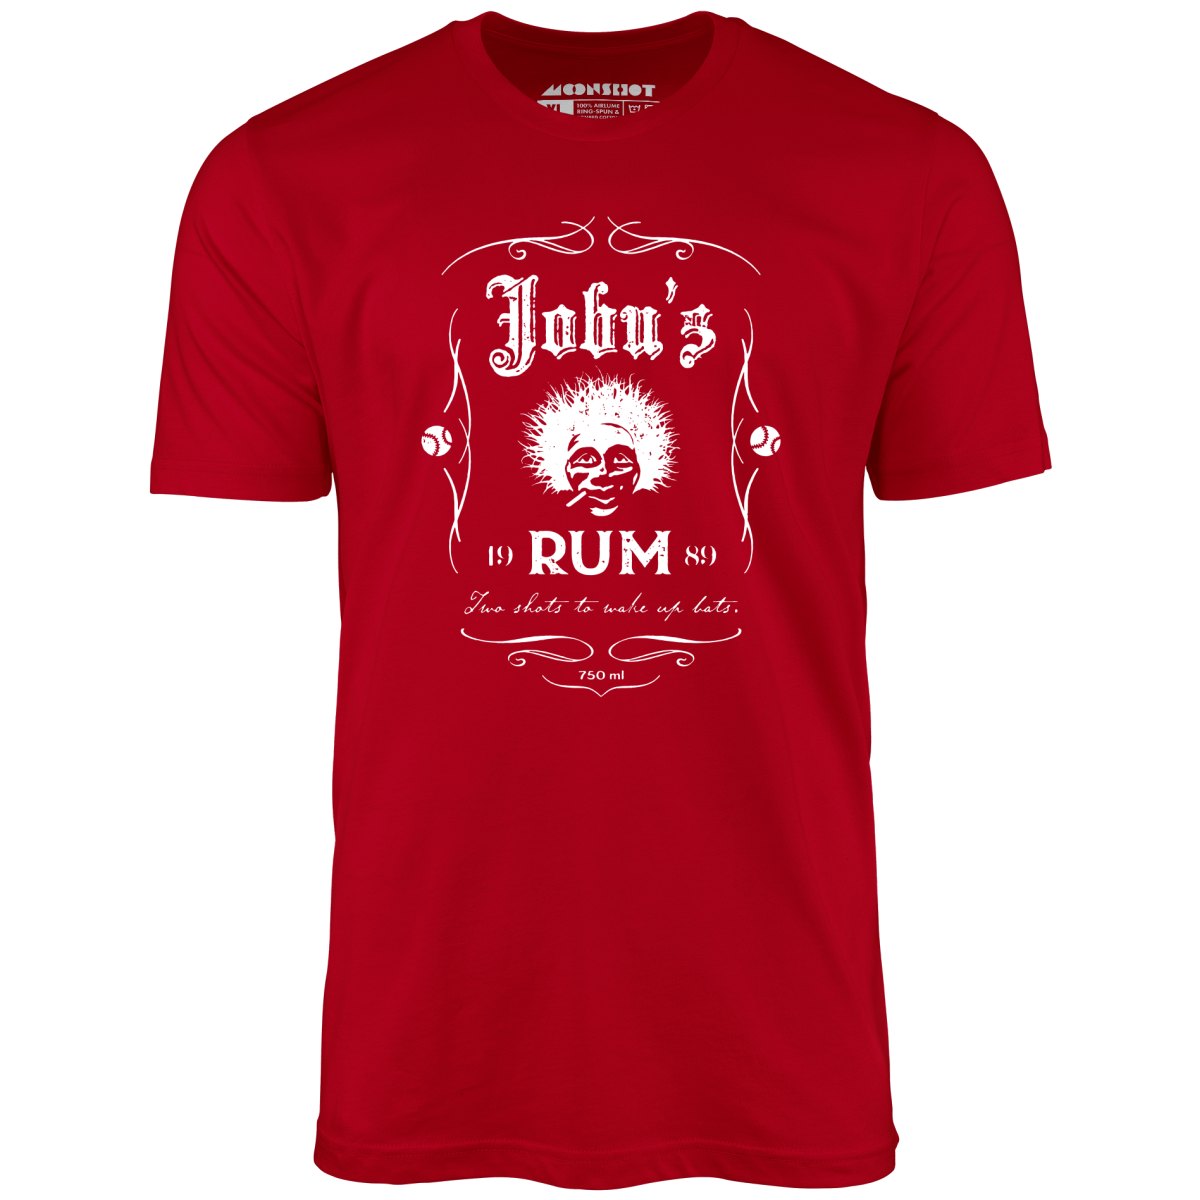 Jobu's Rum - Unisex T-Shirt